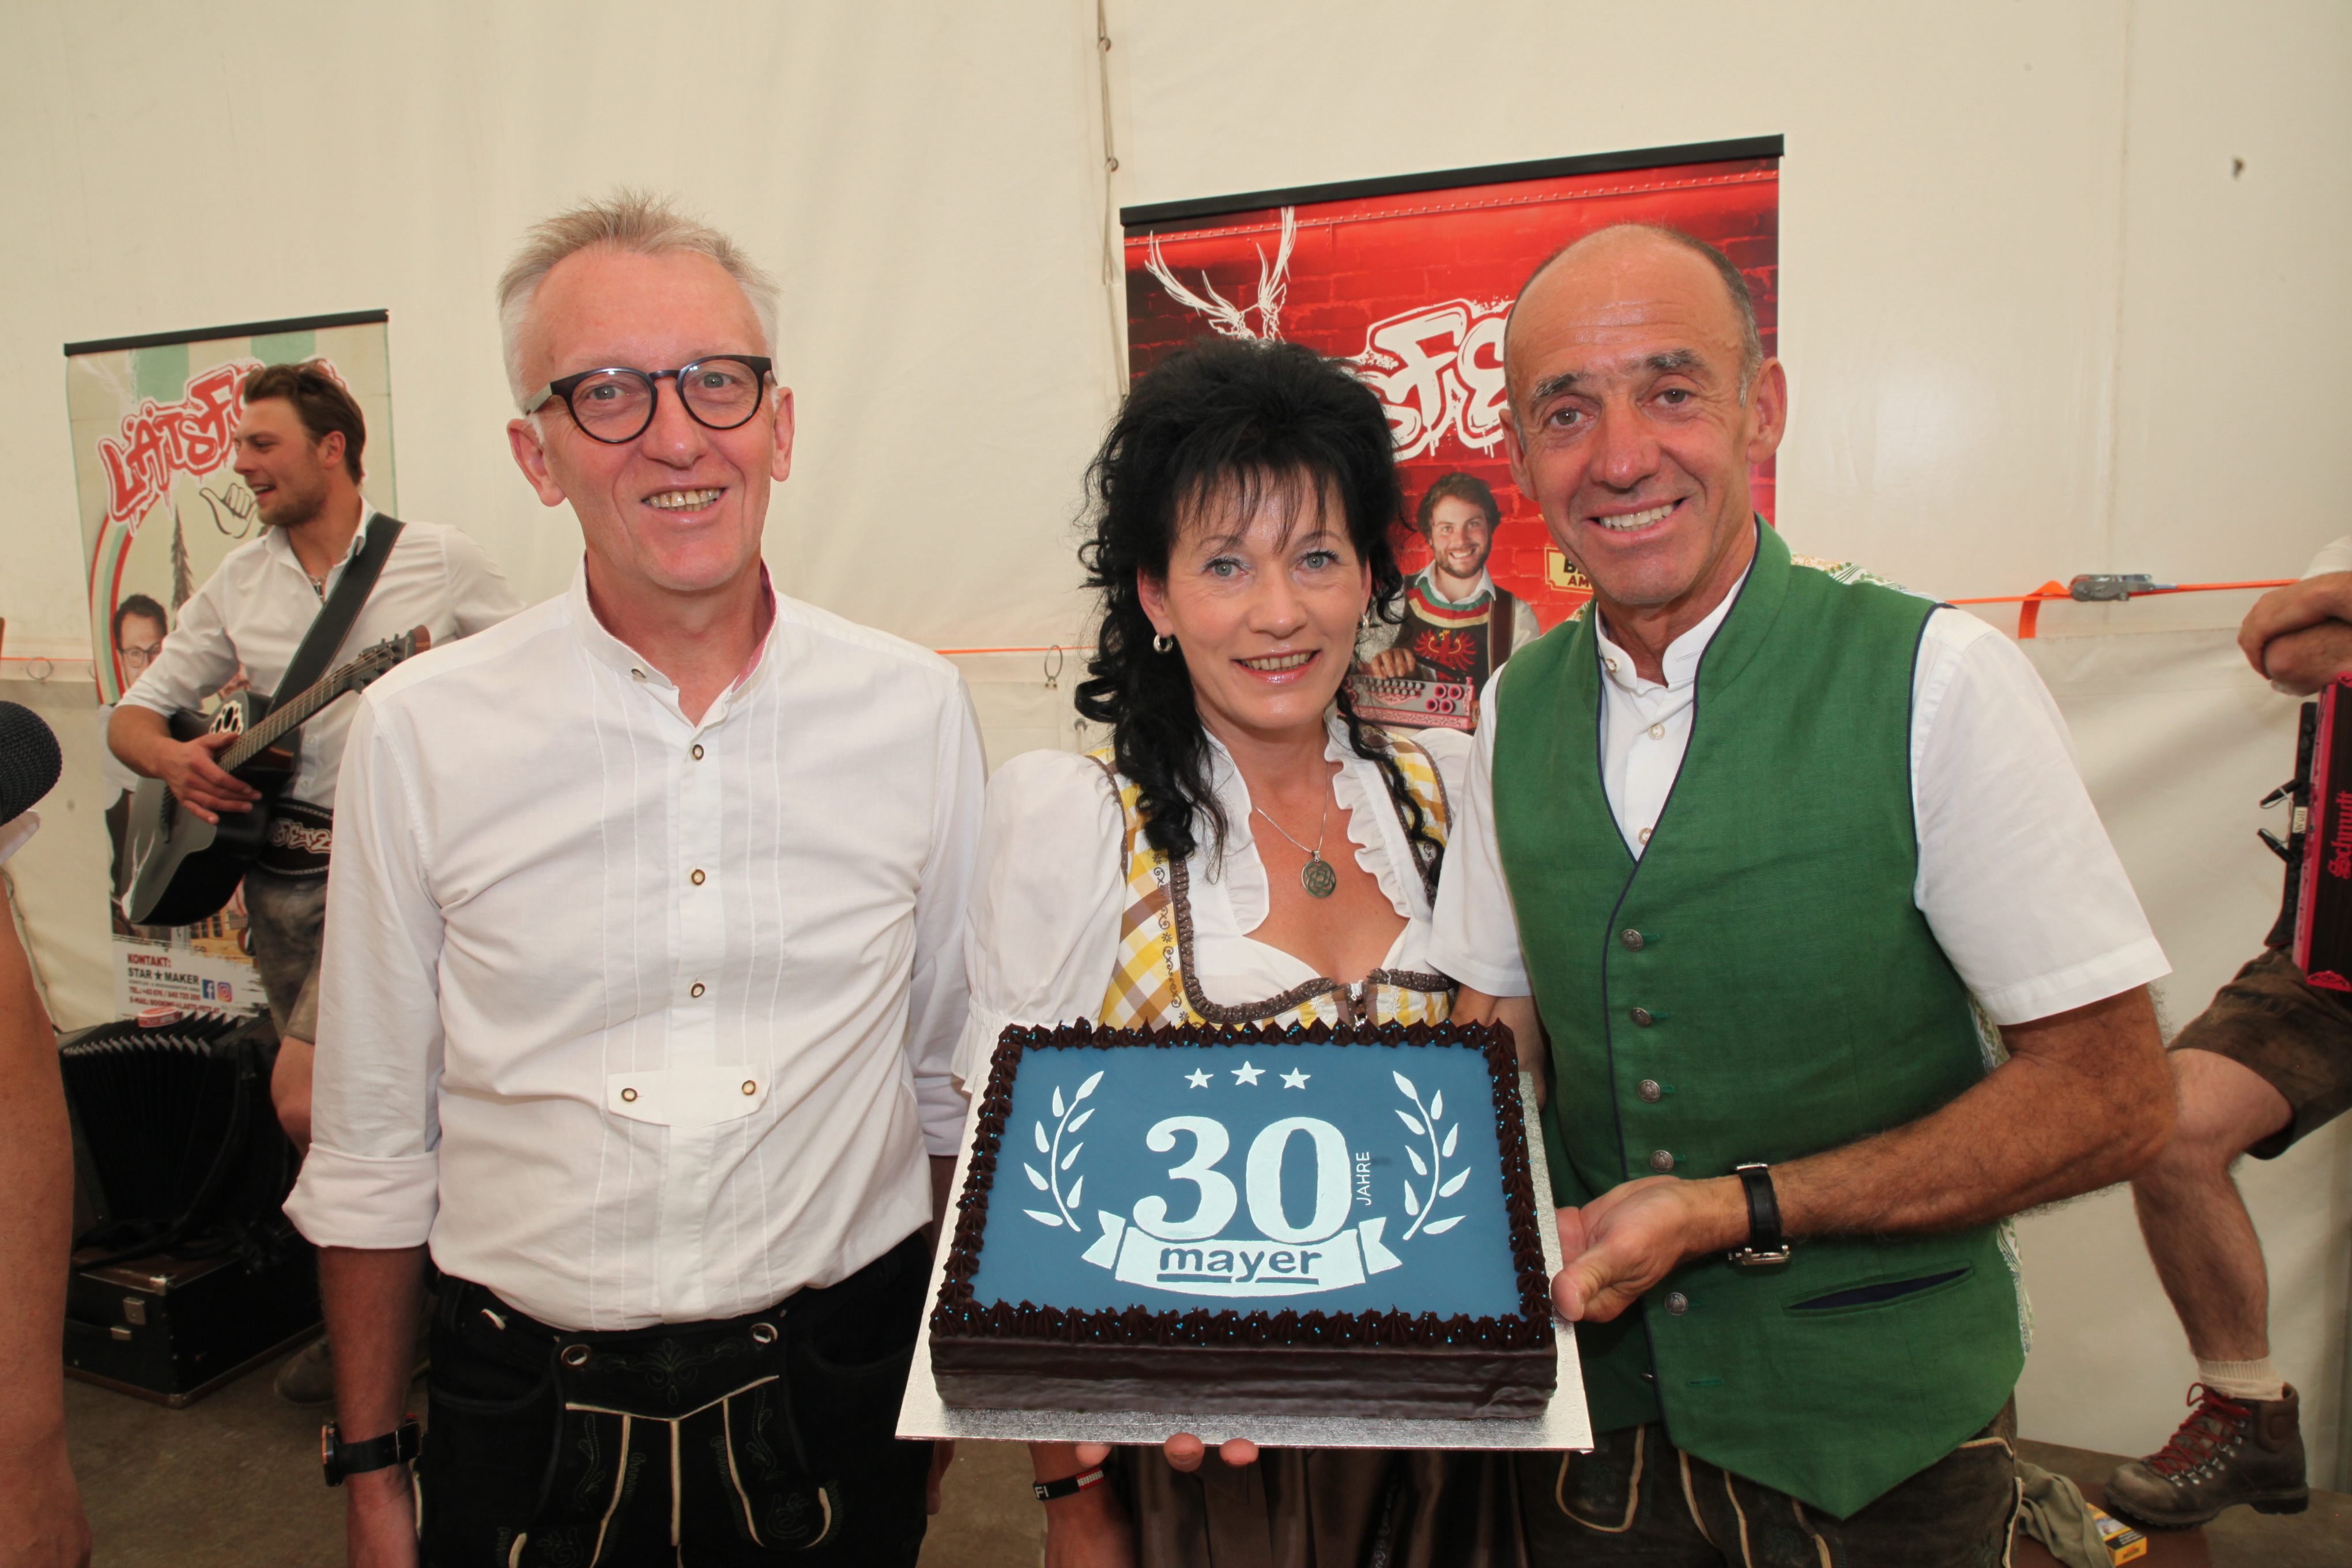 30jähriges Jubiläum Familie Mayer mit Torte